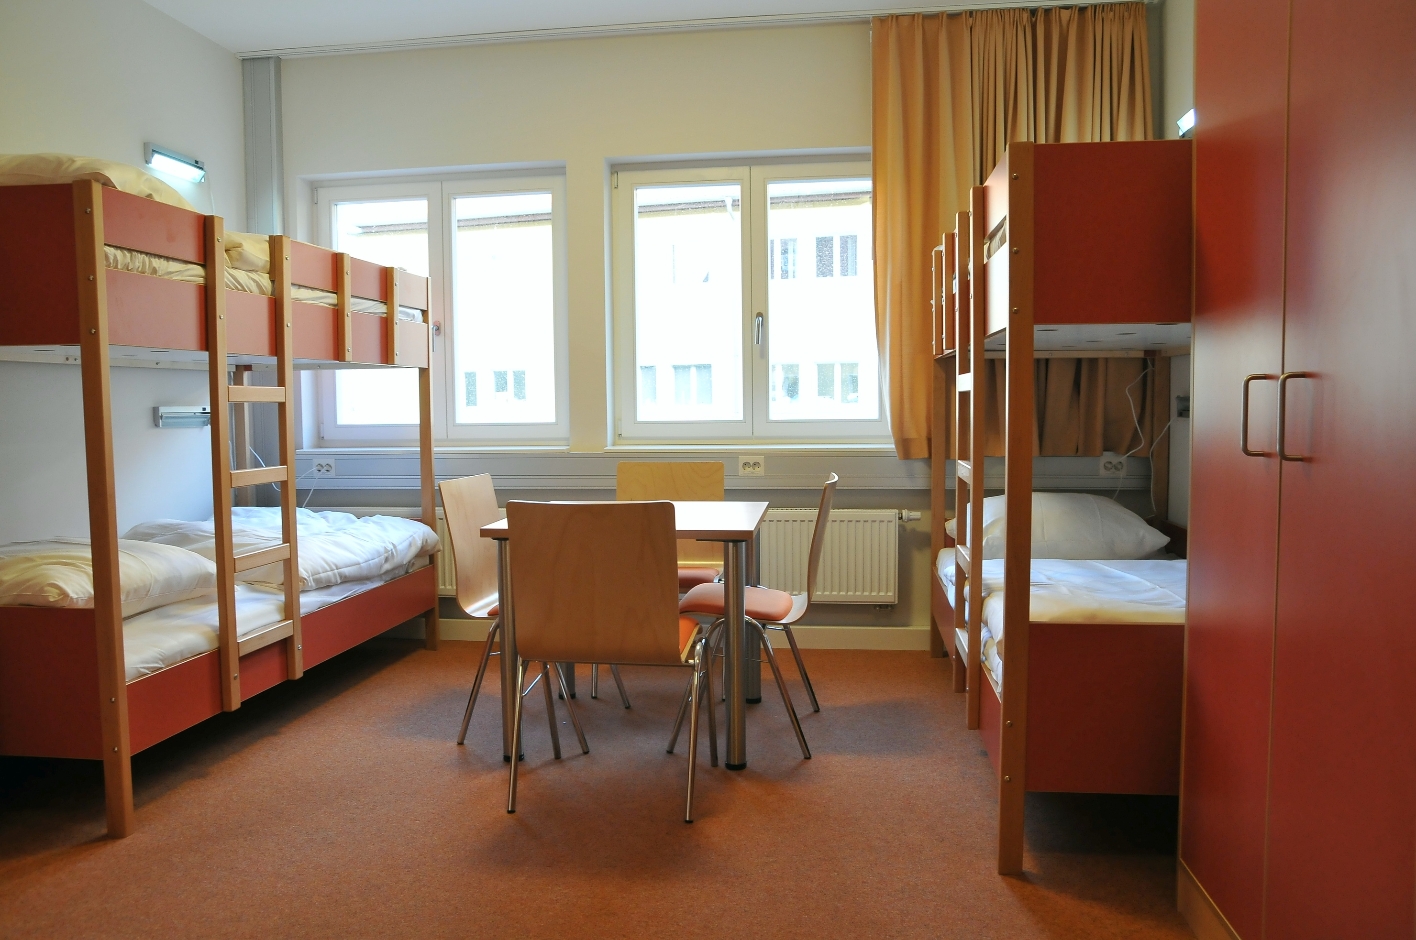 Ein Gästezimmer in der Internationalen Jugendbegegnungsstätte. Links und rechts an der Wand stehen je zwei Doppelstockbetten, in der Mitte ein Tisch mit vier Stühlen, dahinter sind mehrere Fenster.